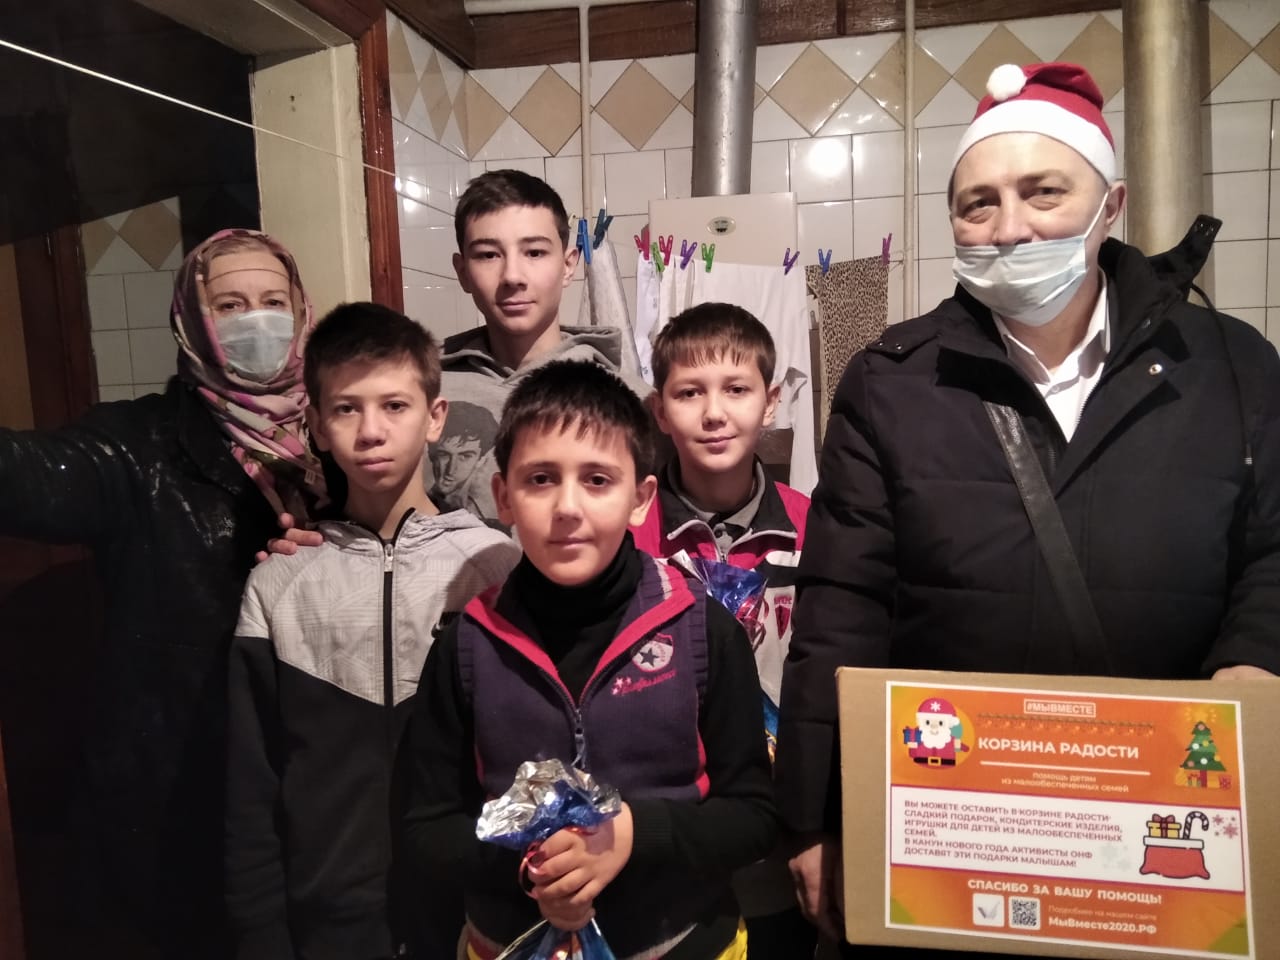  В КБР активисты передали новогодние подарки в семьи с детьми-инвалидами